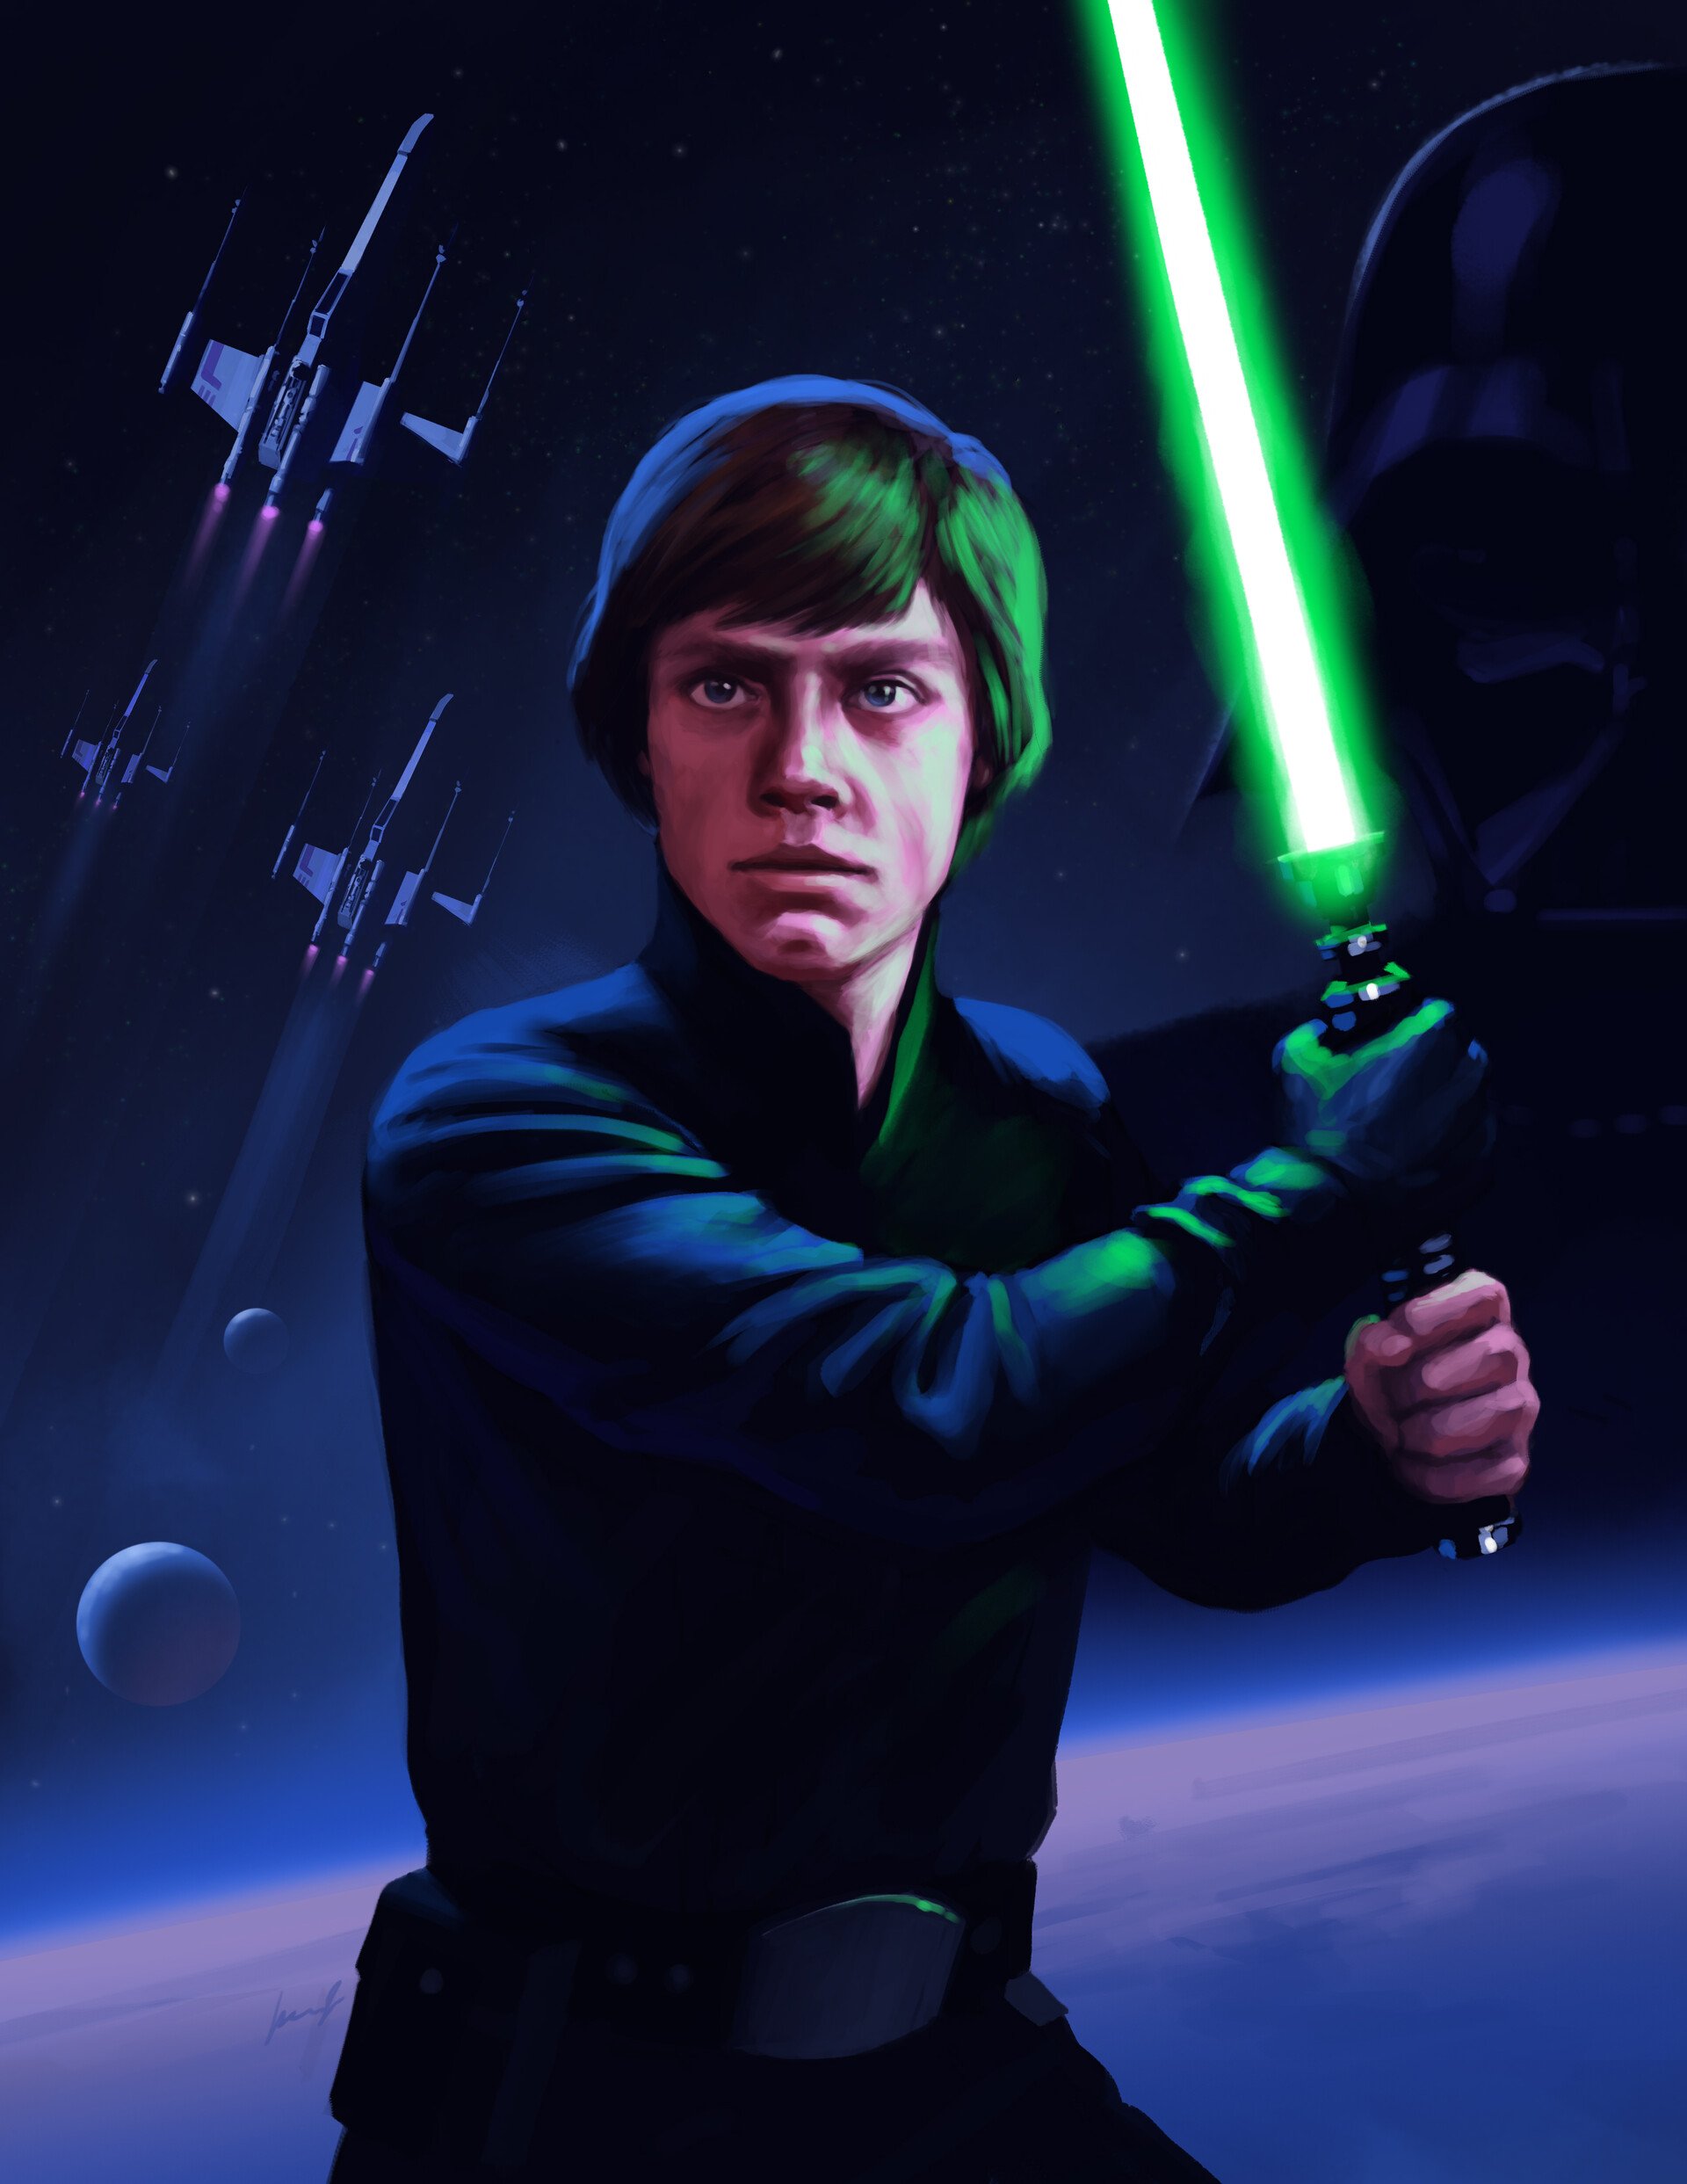 Luke Skywalker, Hero of the Rebellion